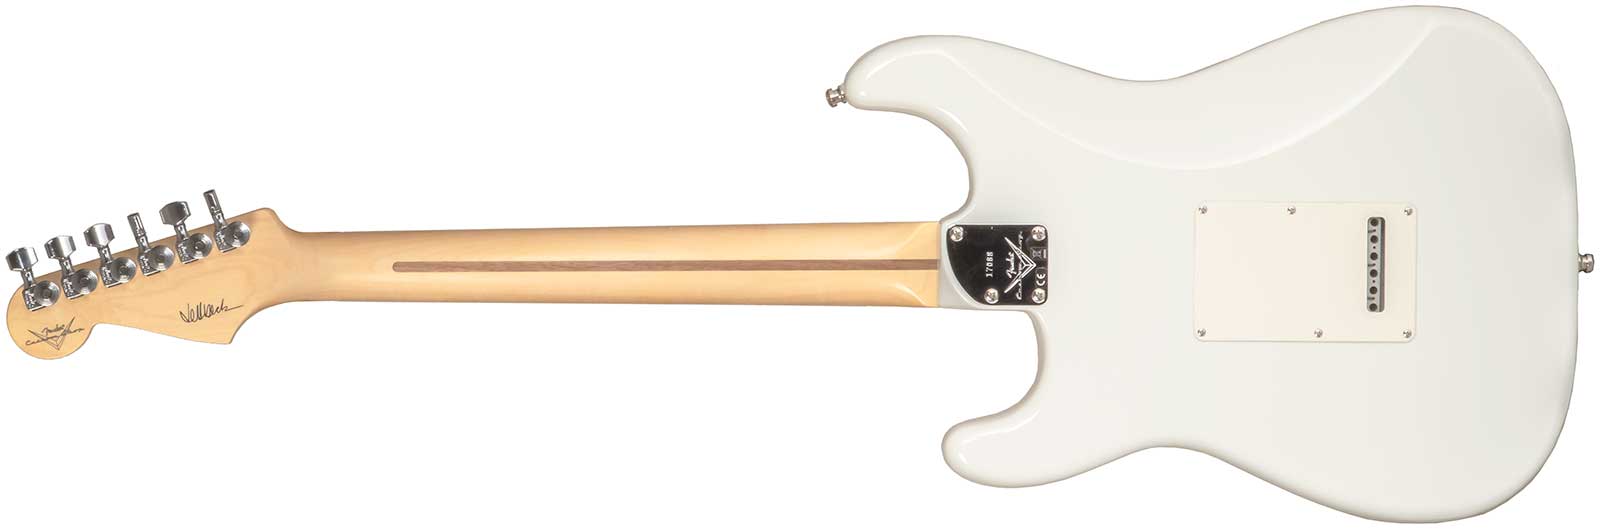 Fender Custom Shop Jeff Beck Strat 3s Trem Rw #xn17088 - Nos Olympic White - Elektrische gitaar in Str-vorm - Variation 1